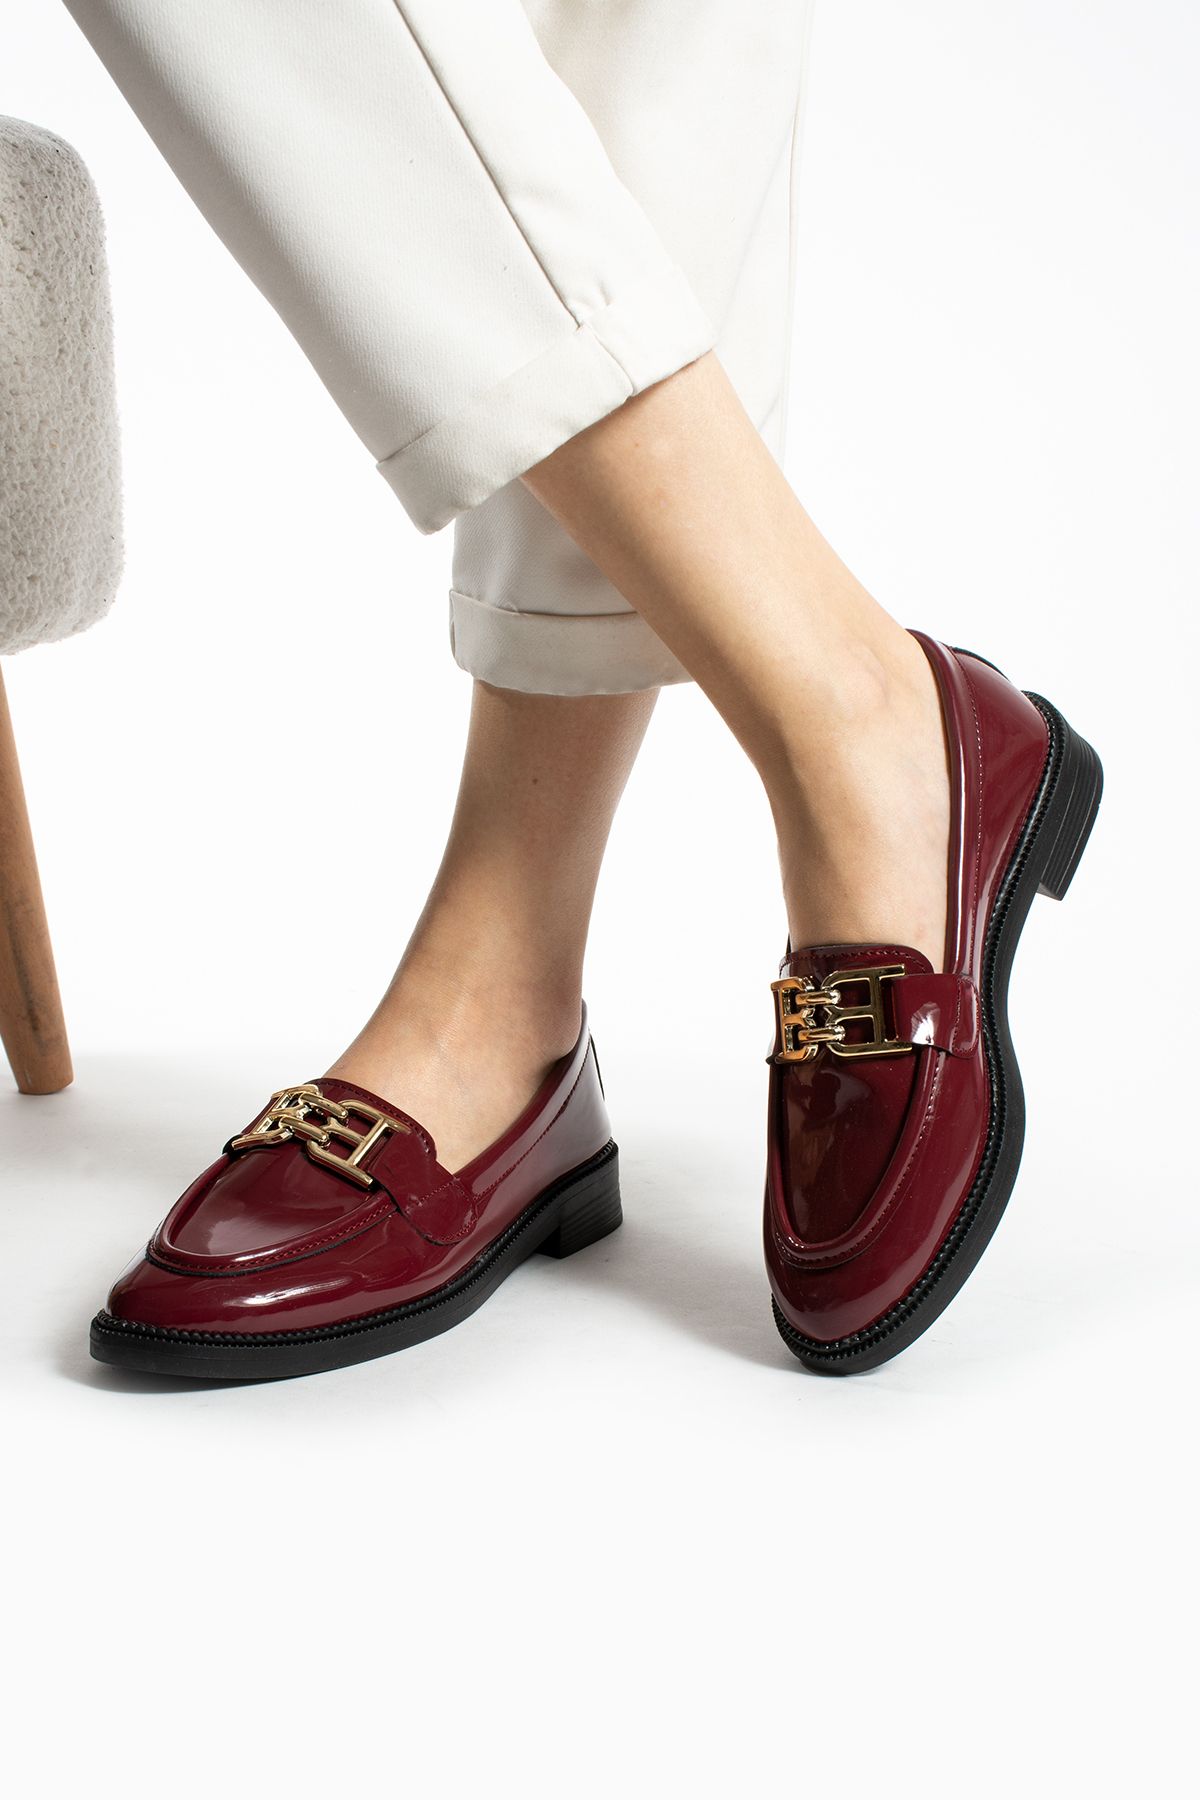 DUXAL SHOES Kadın Loafer Makosen Casual Toka Detay Günlük Ayakkabı